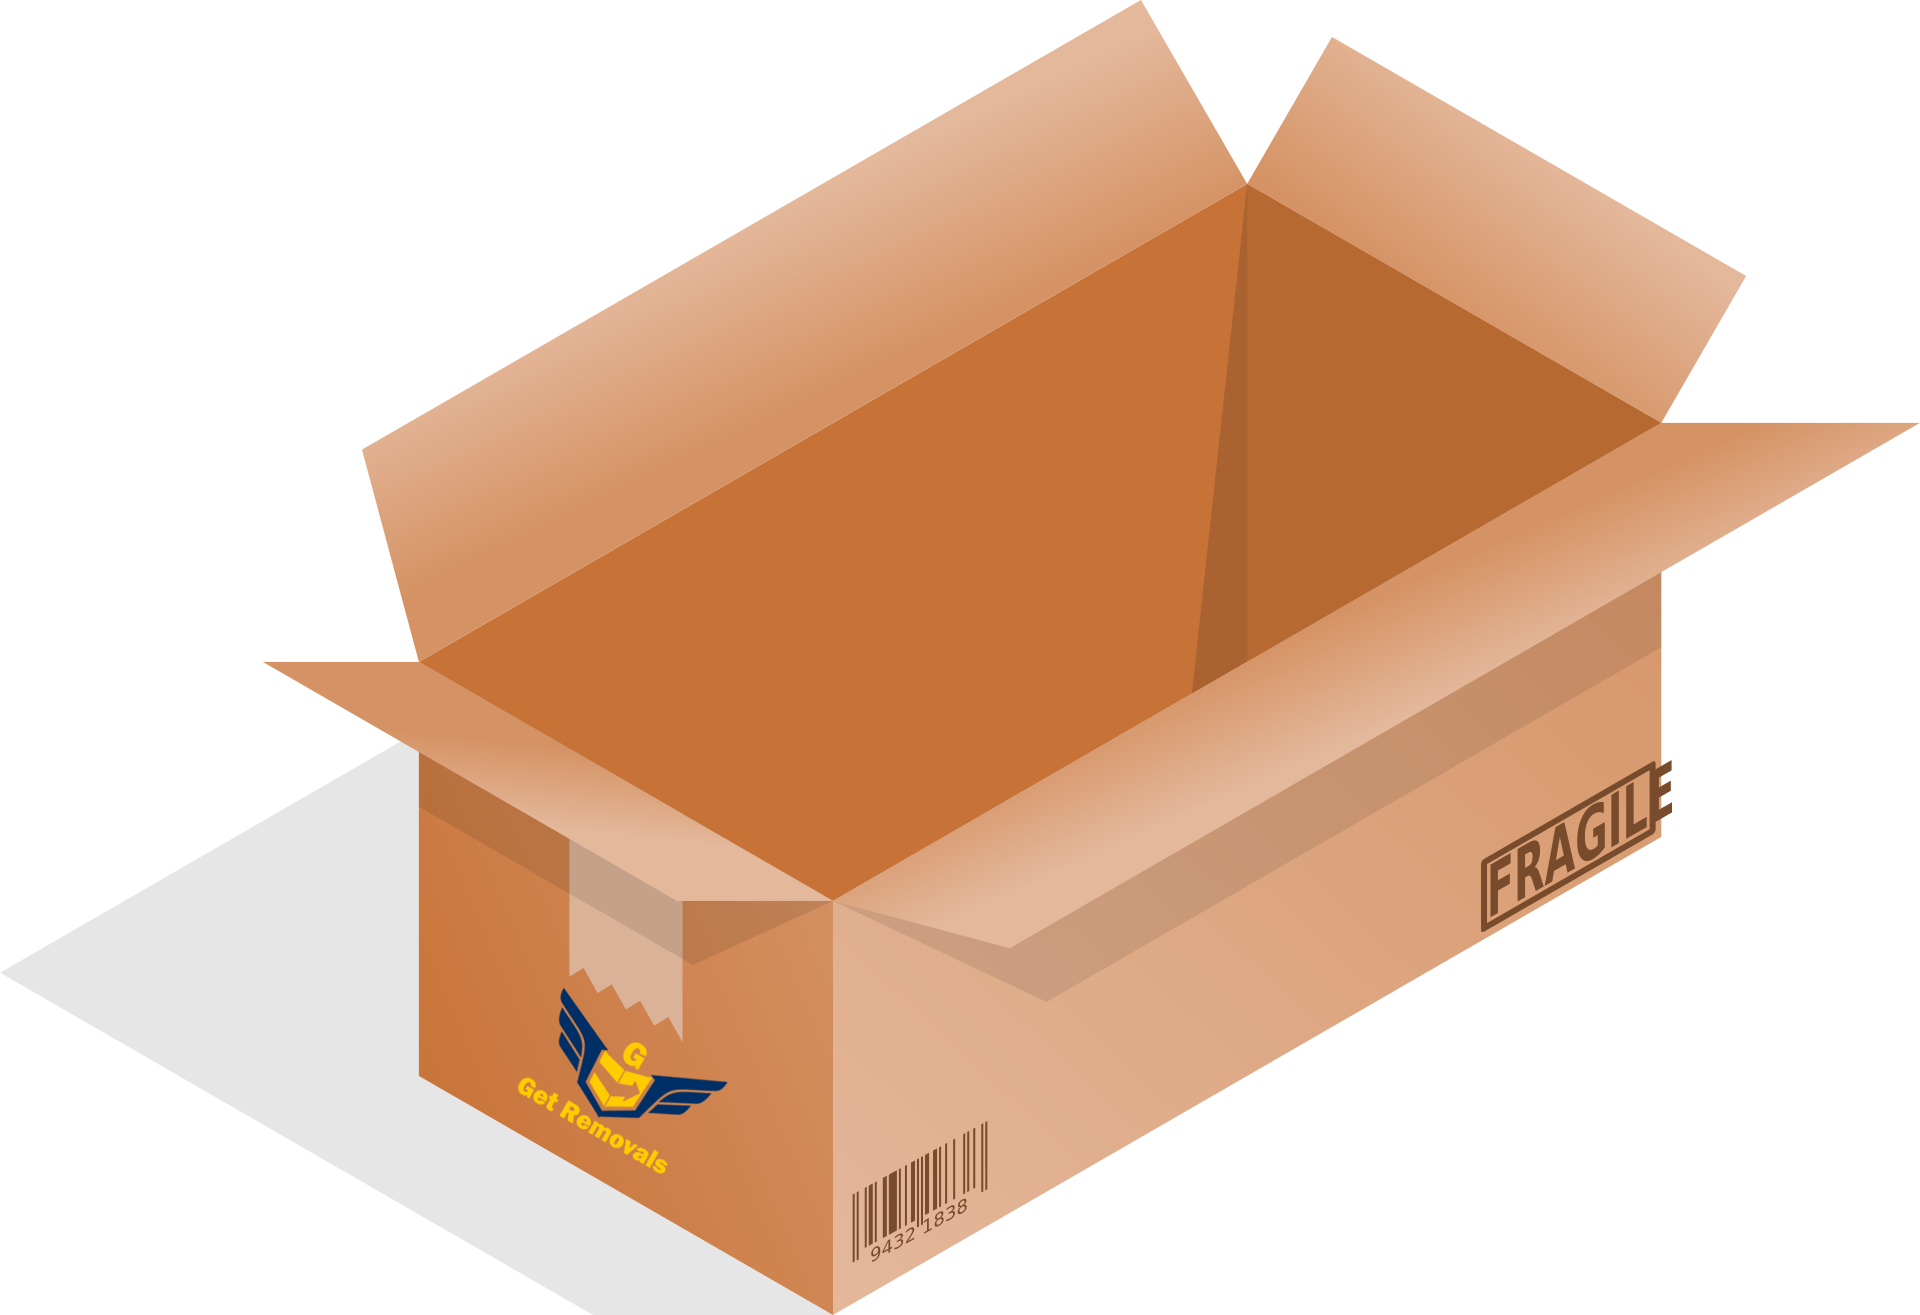 Есть коробка изображенная. Коробки. Картонная коробка. Картонный ящик. Картонные коробки без фона.